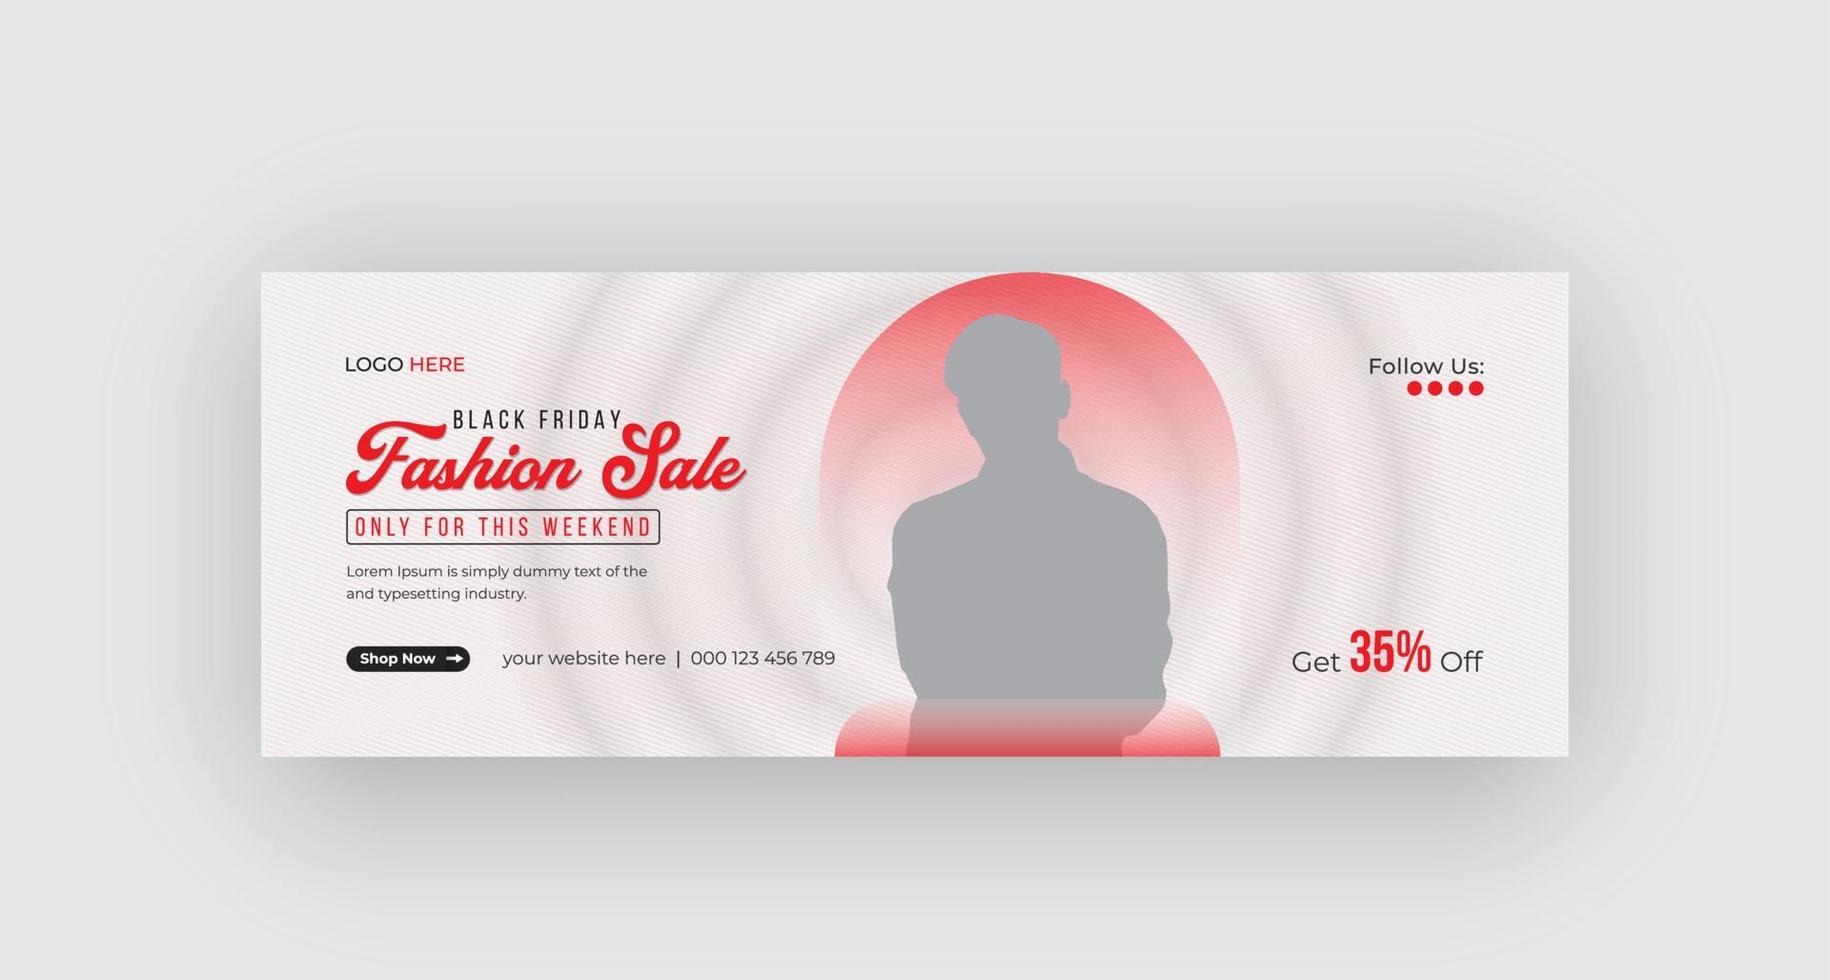 Black Friday Fashion Sale Timeline Cover Social Media Banner Design Pro Download vektor